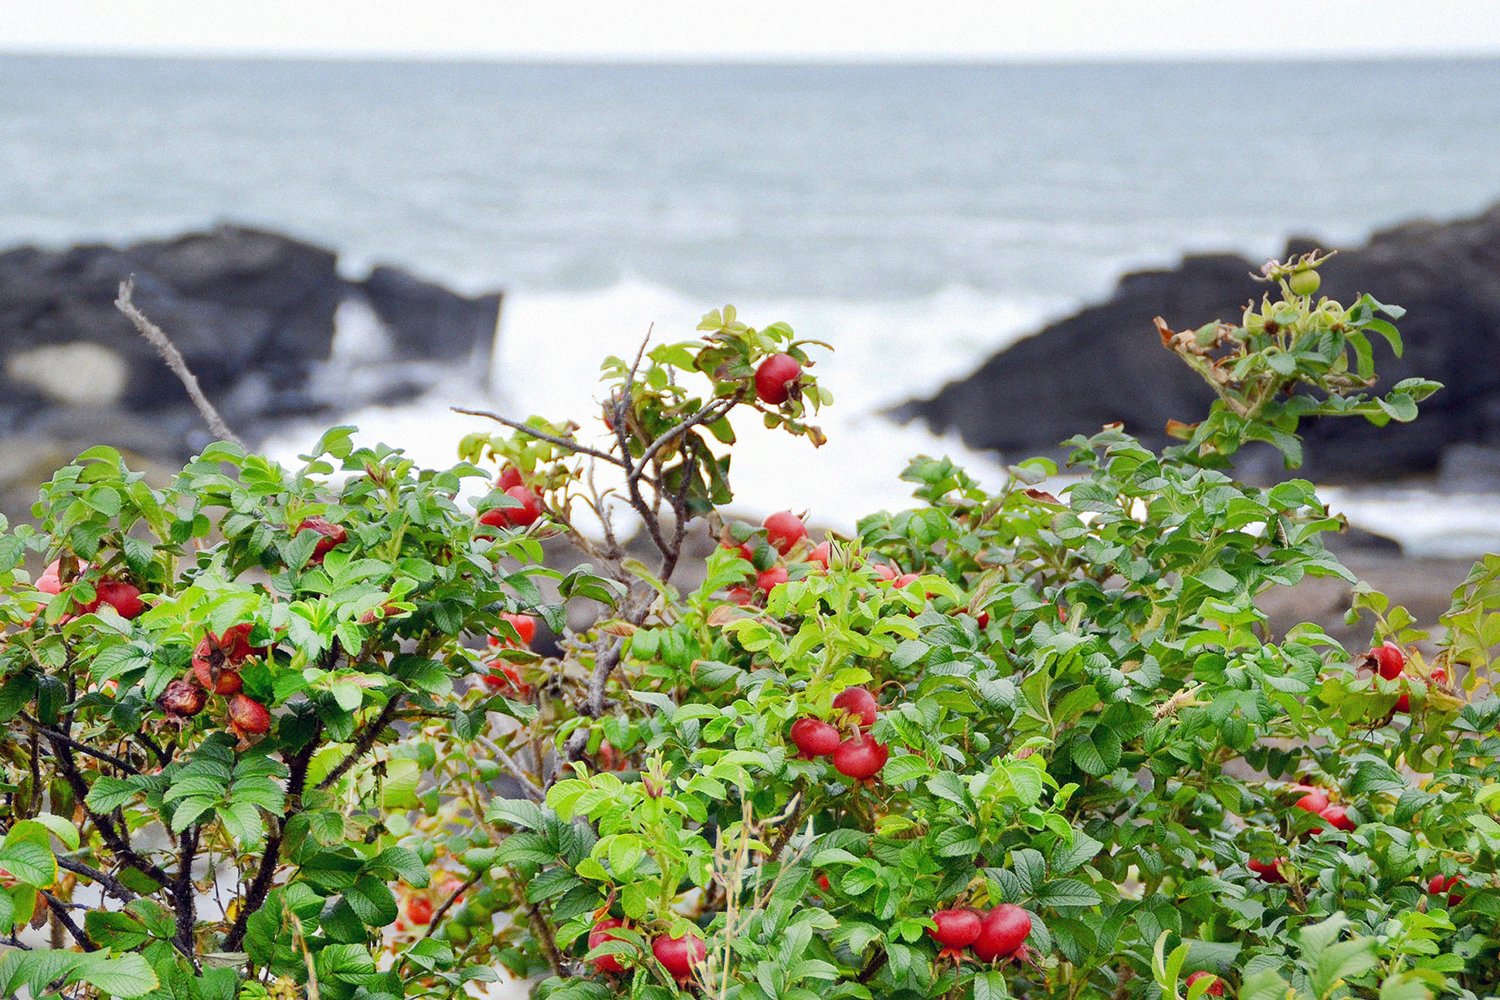 暦生活 こよみせいかつ 10周年 ハマナス 旬の花 夏に紅紫色の花を咲かせるハマナス 日本海側の海岸の砂地に多く自生し 花言葉のひとつである 照り映える容色 は 青い海に映えるという意味からつけられました 秋につける赤い実は香りよく